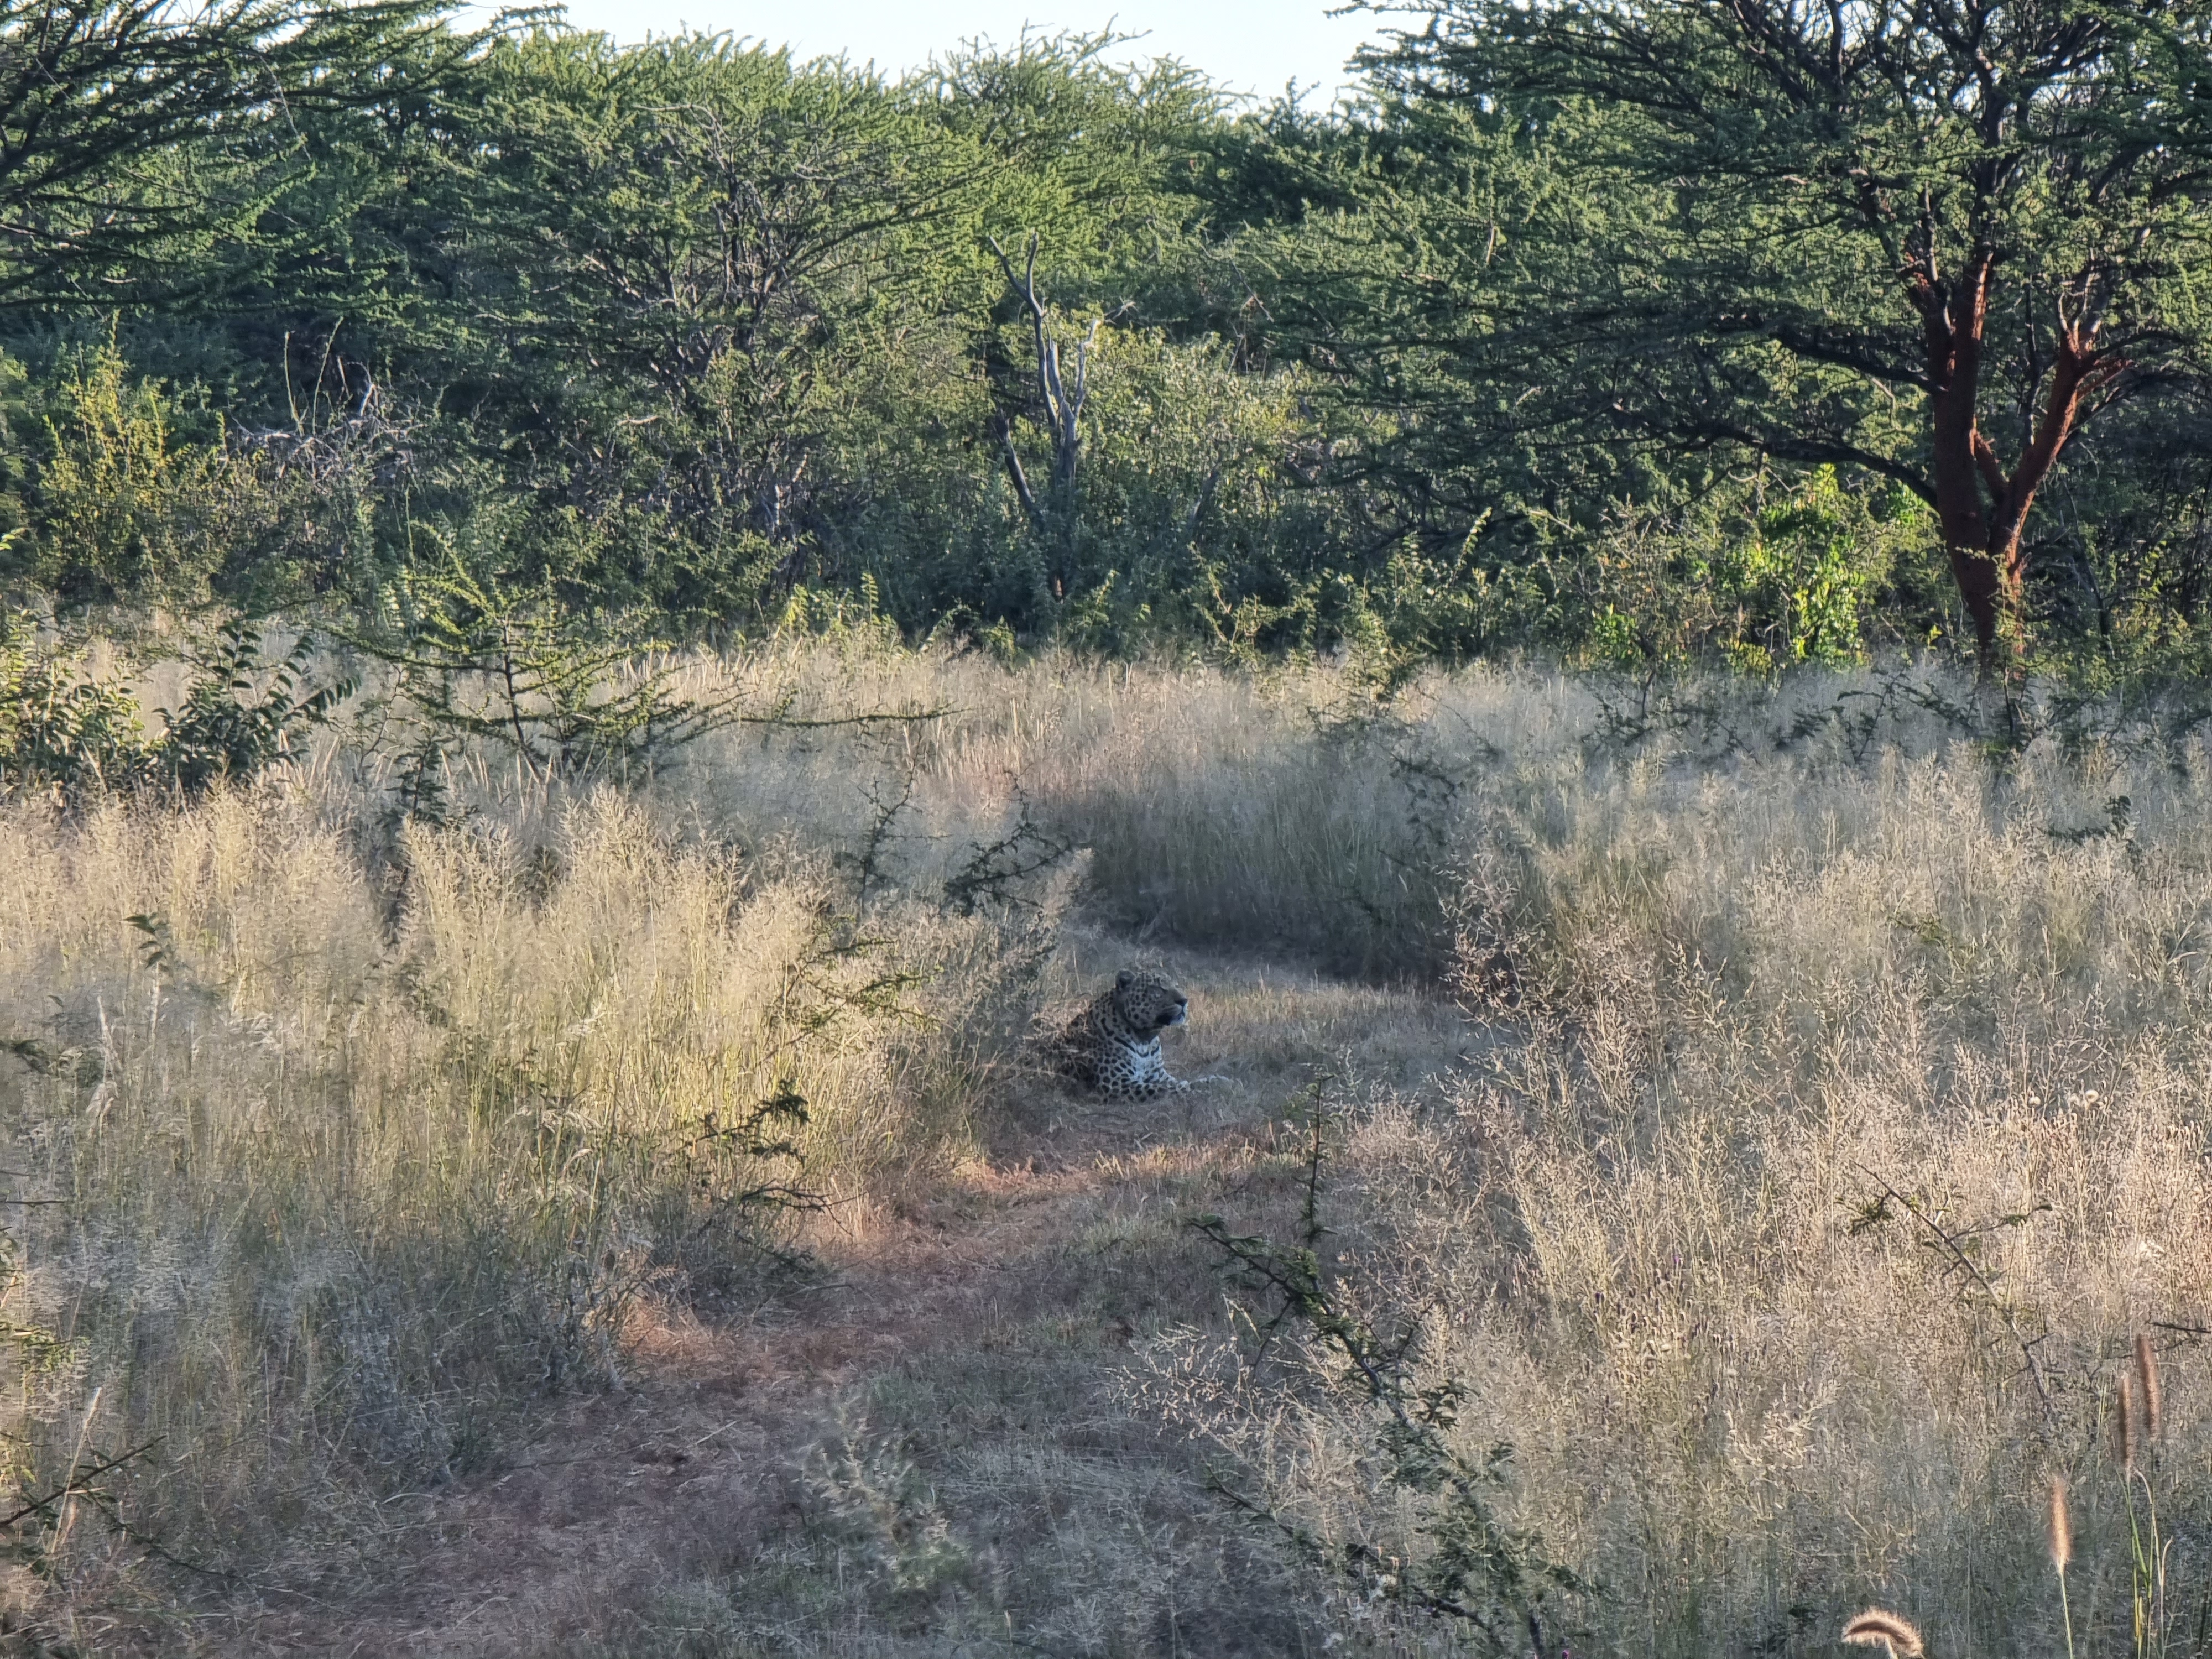 okonjima nature reserve leopard